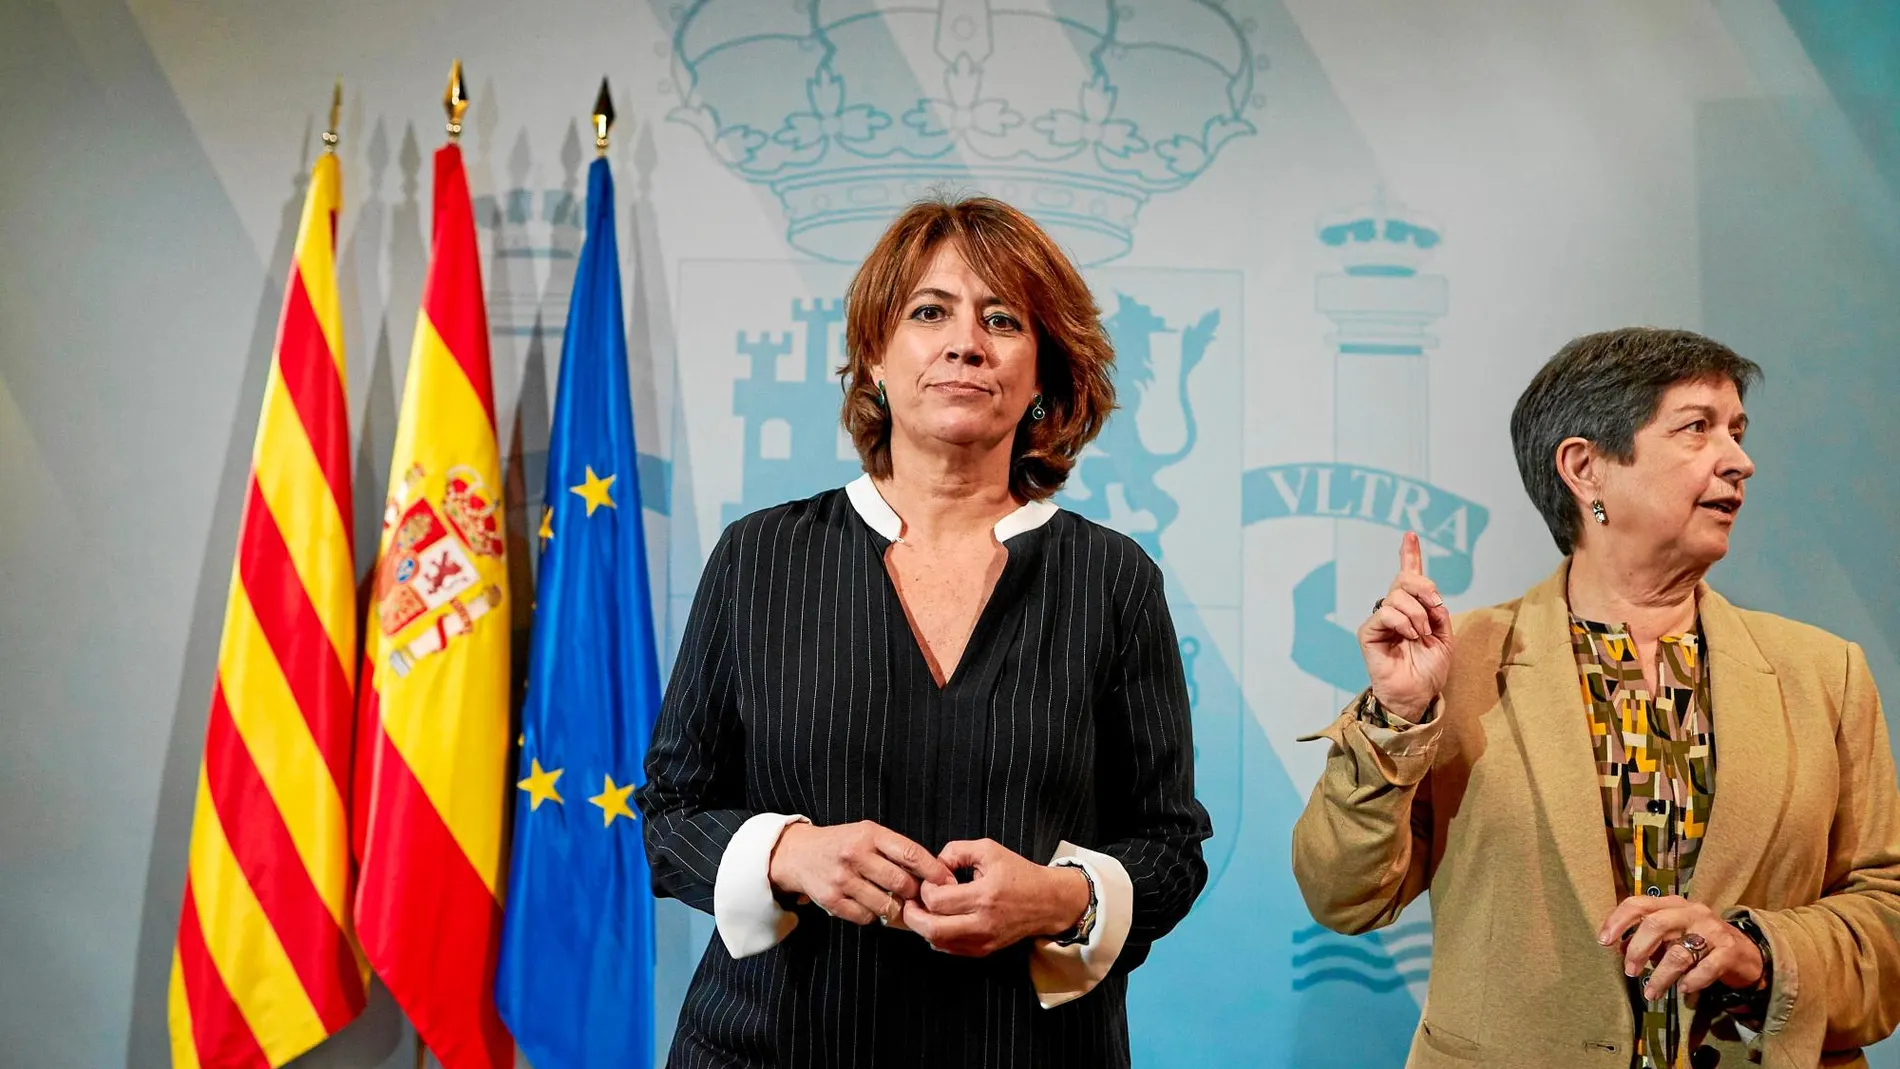 En la imagen, la ministra de Justicia, Dolores Delgado, en una comparecencia junto a la delegada del Gobierno, Teresa Cunillera.